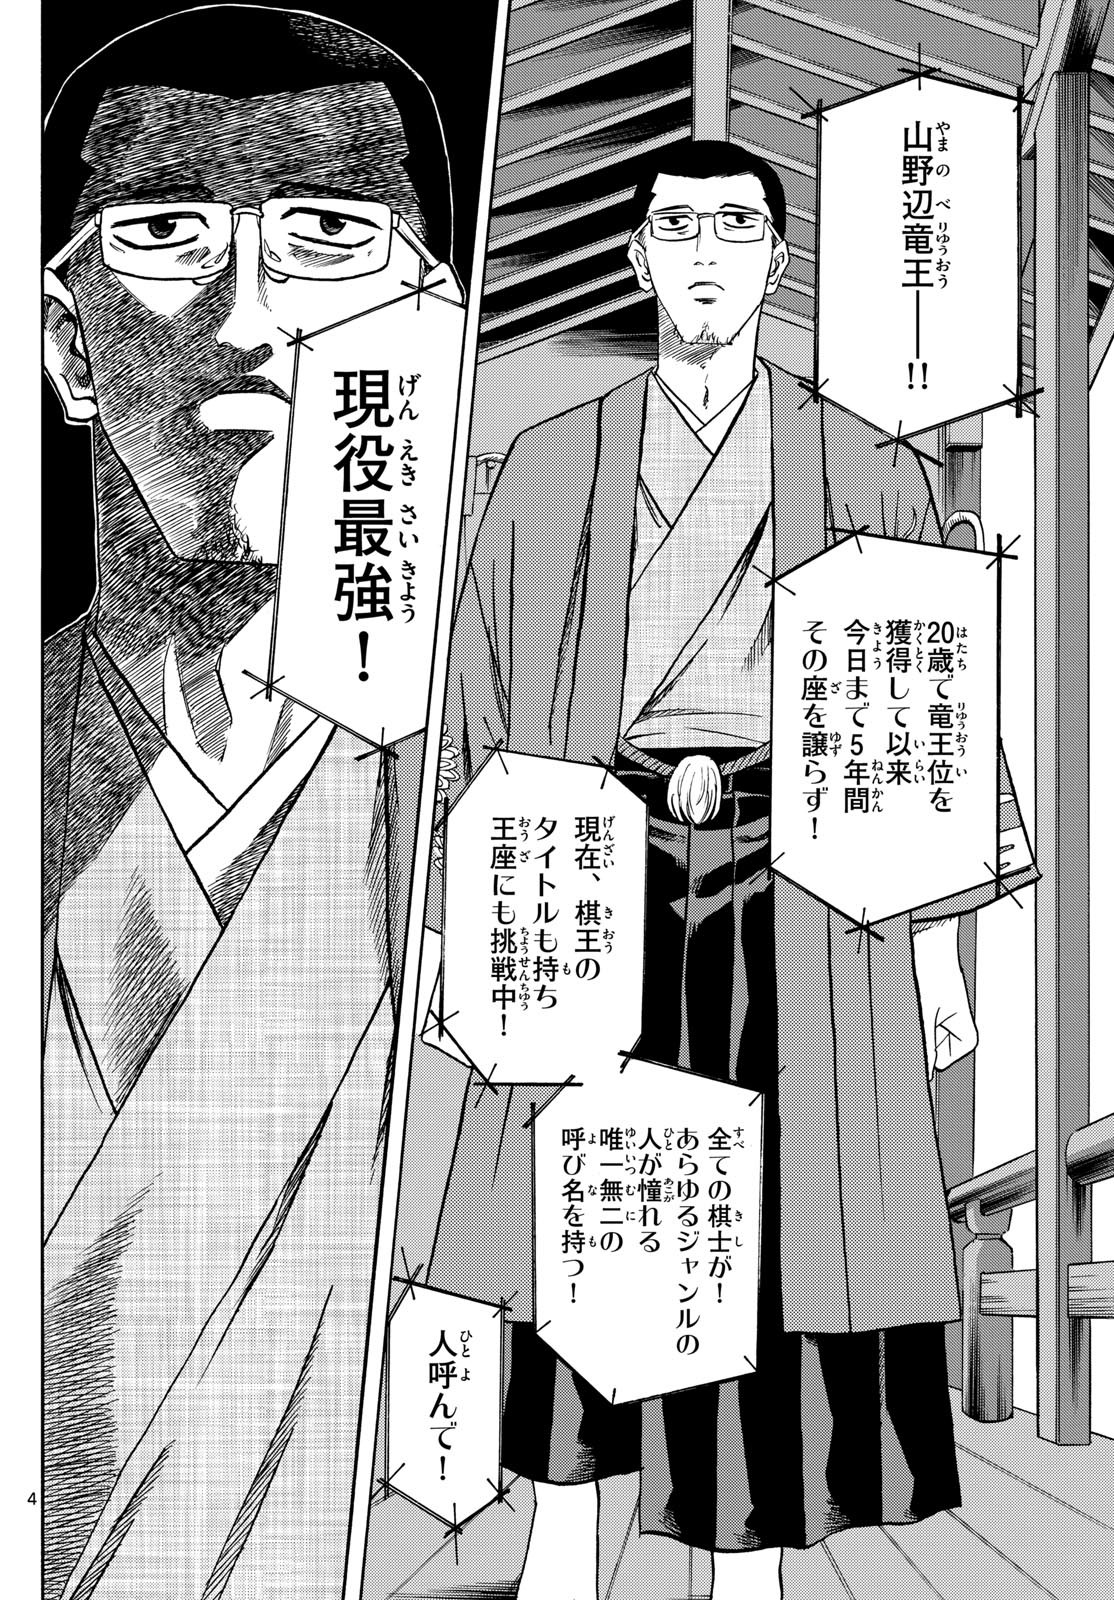 Ryu-to-Ichigo - Chapter 154 - Page 4